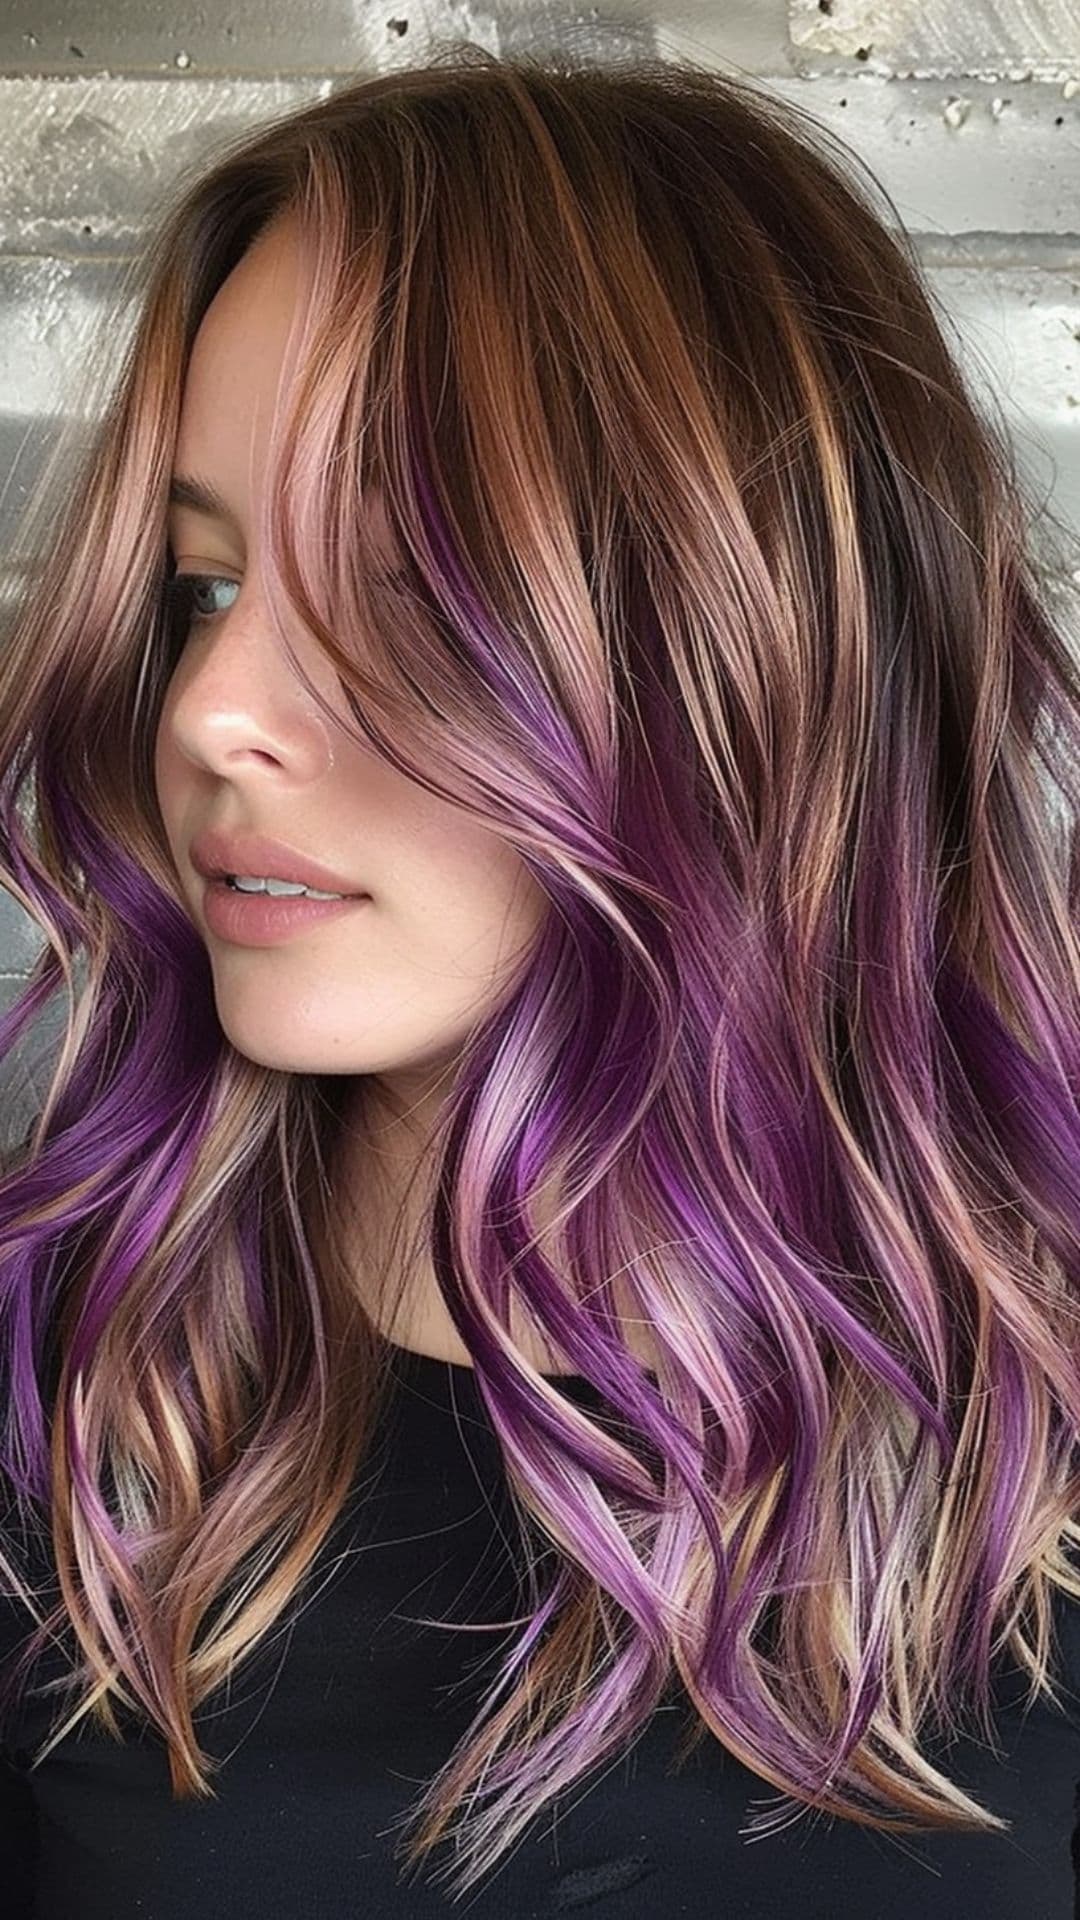 A woman modelling a purple hair streaks.